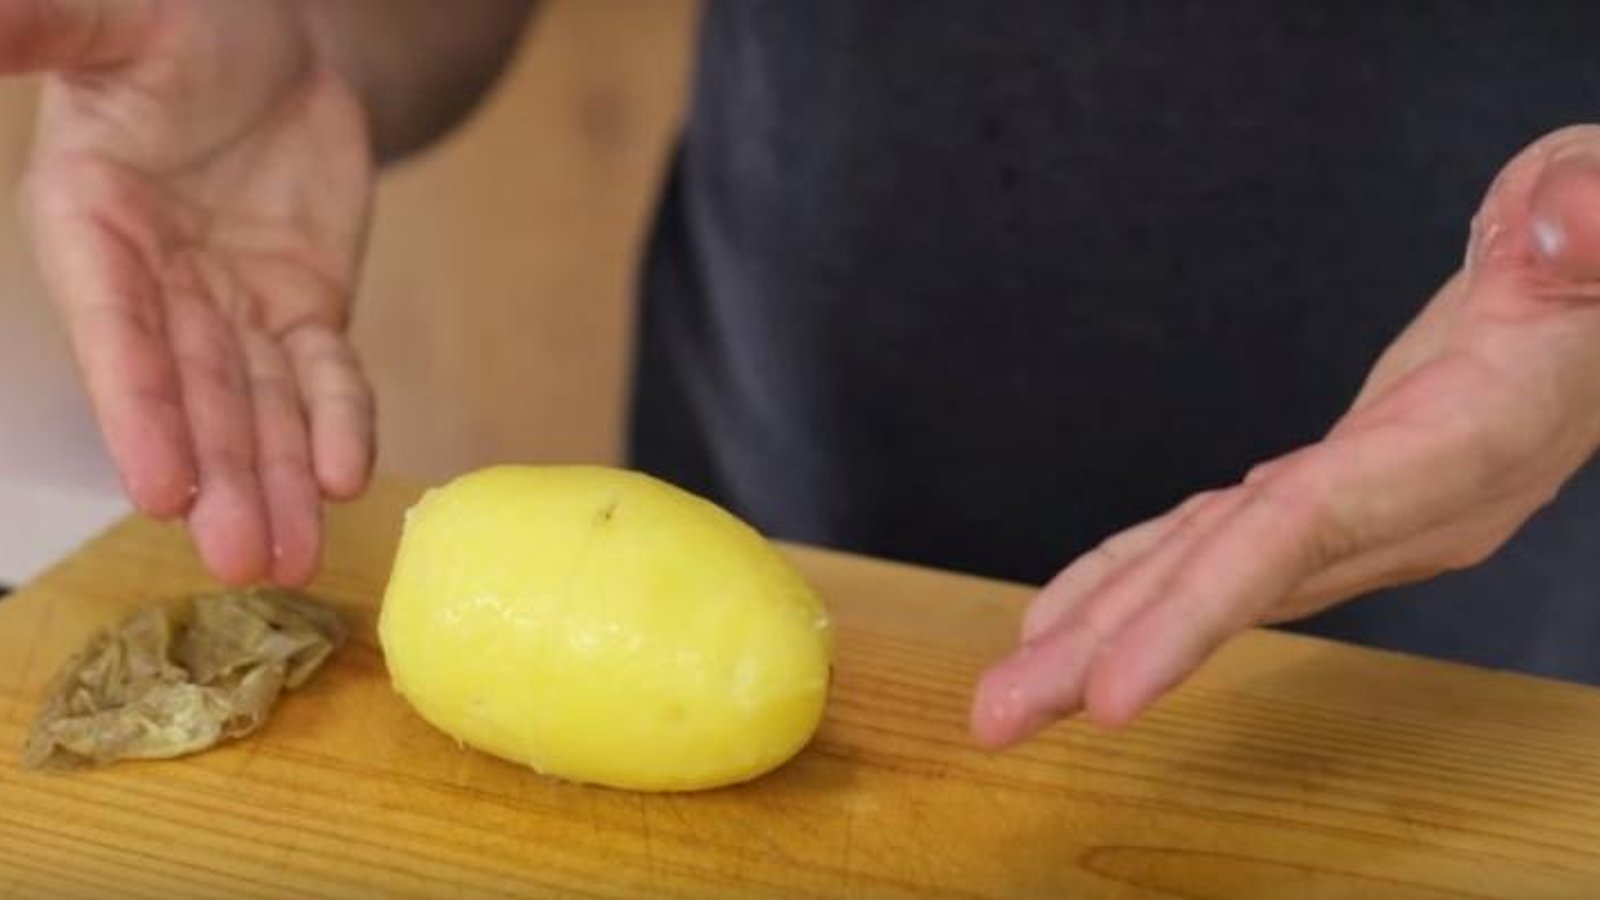 Un truc très simple à utiliser avant de faire bouillir vos pommes de terre qui vous permettra de sauver beaucoup de temps